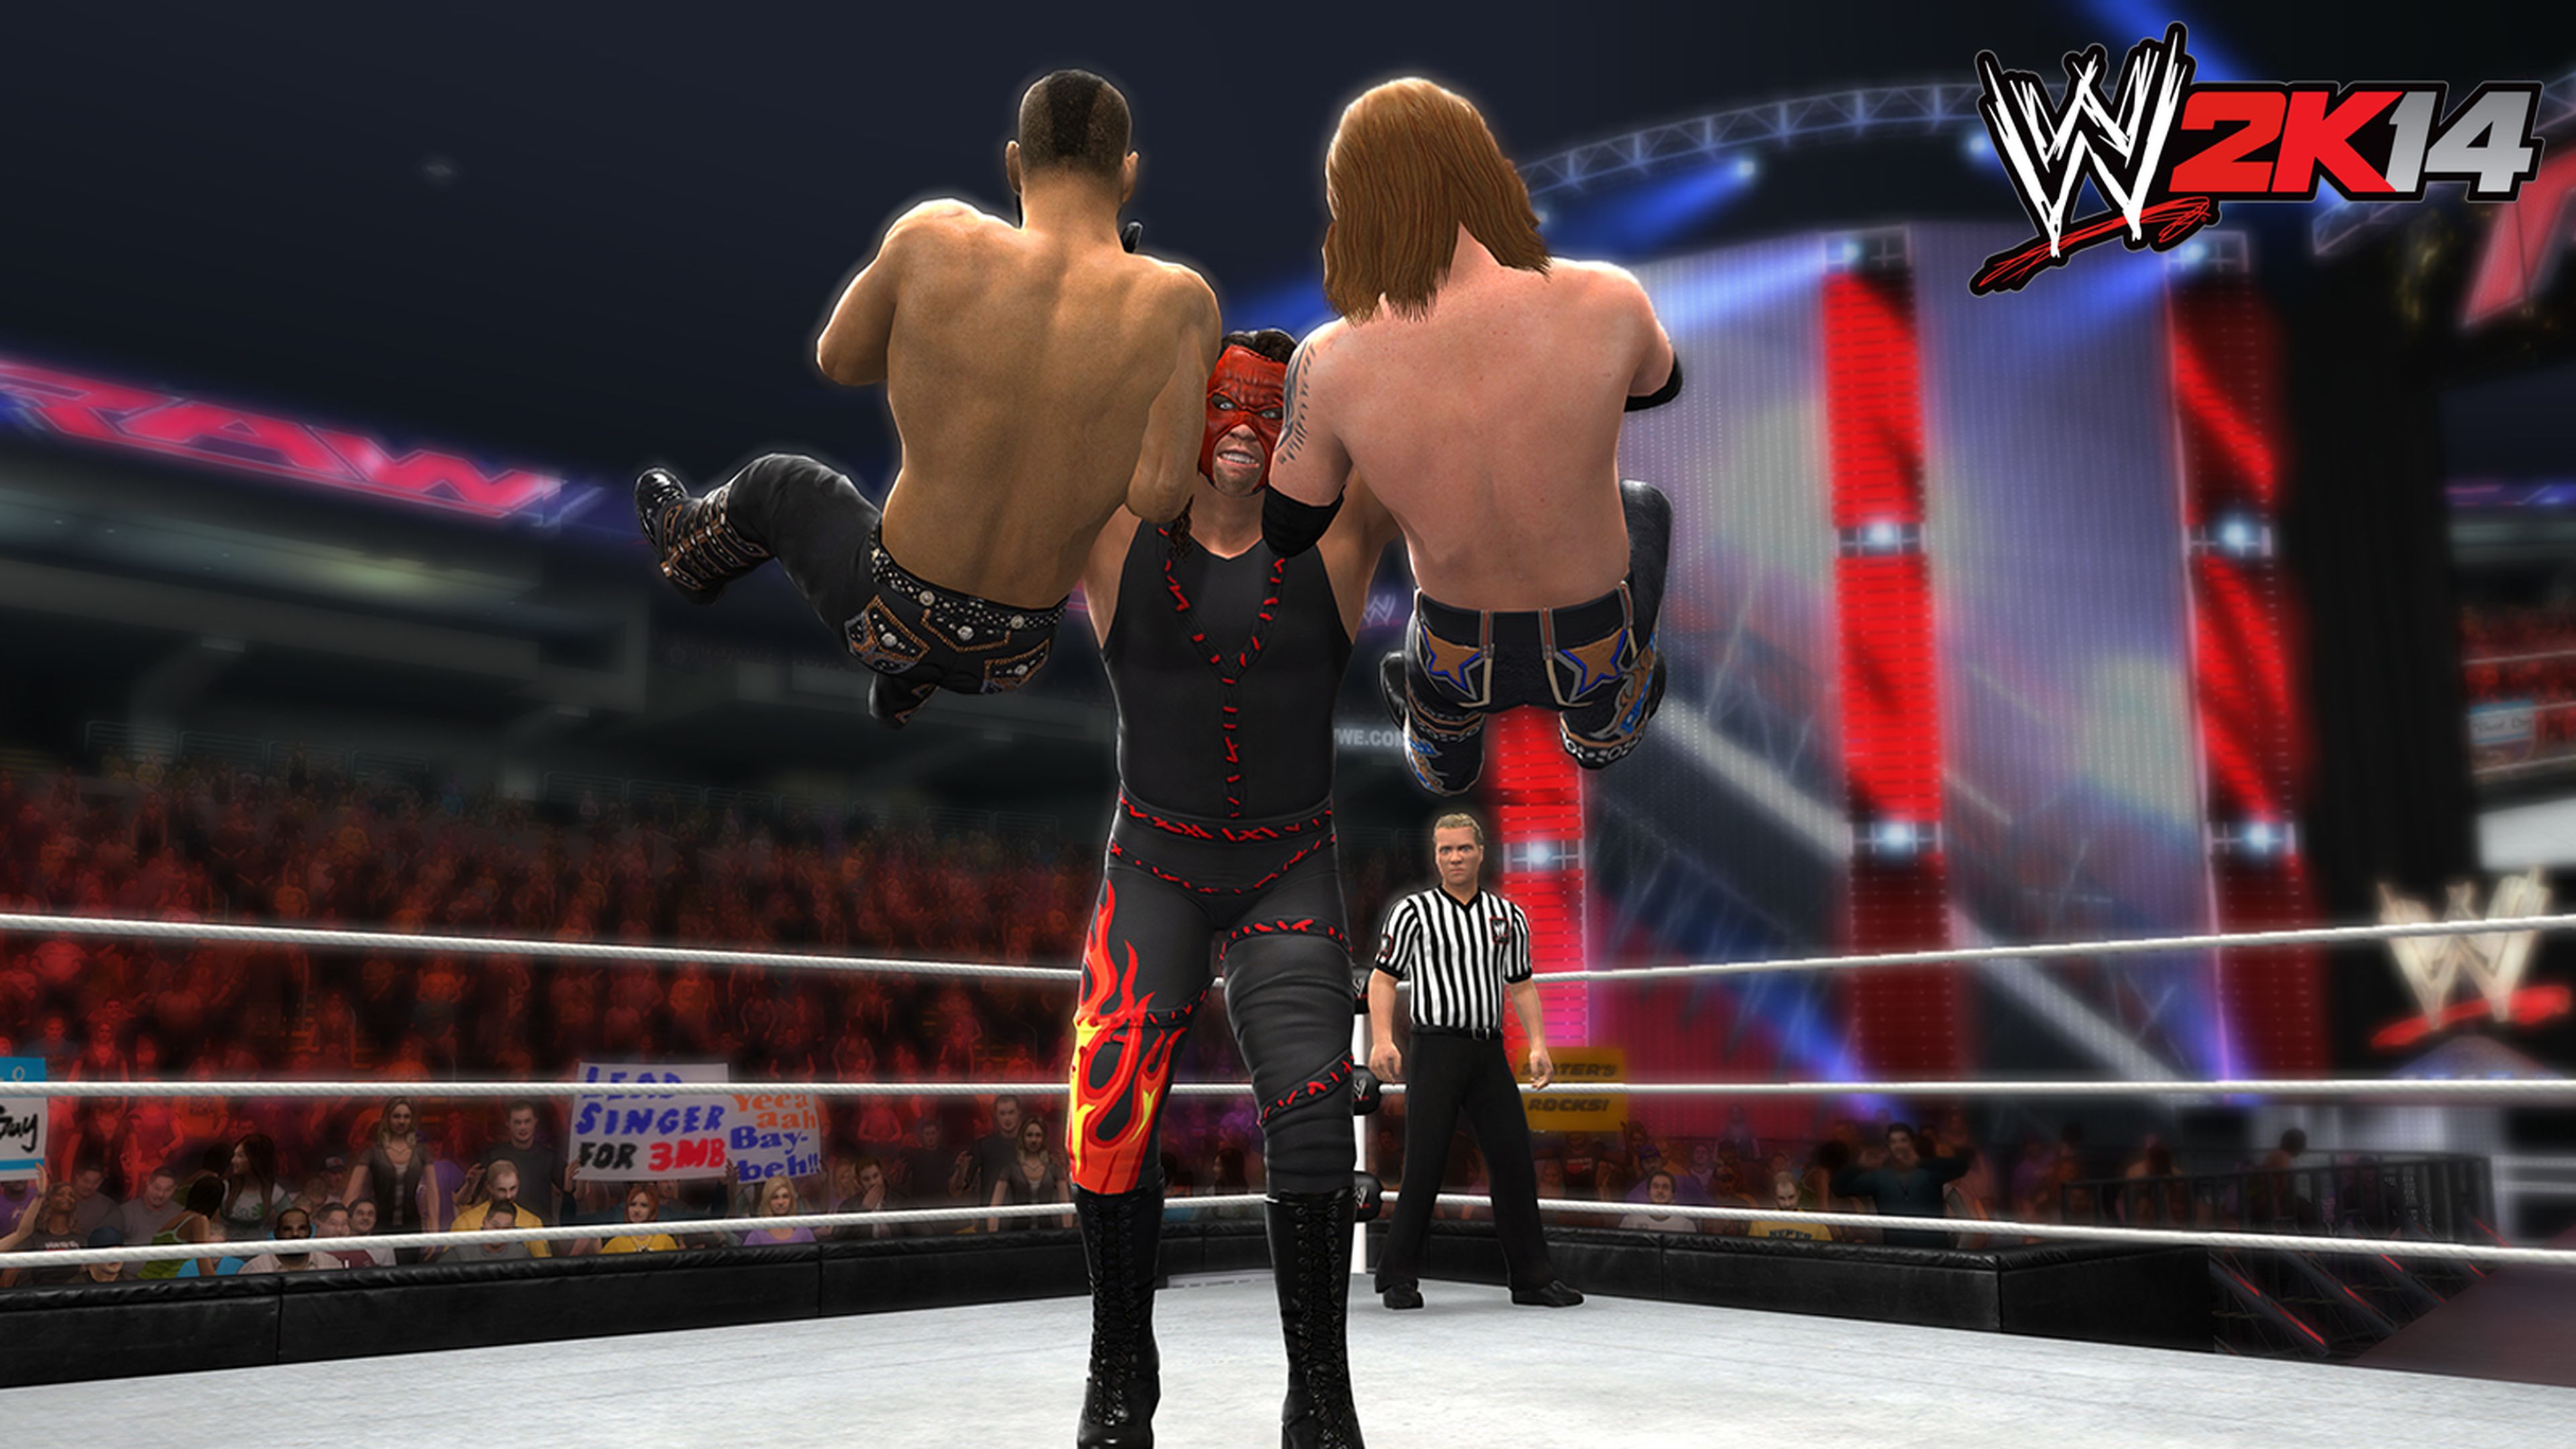 Análisis de WWE 2K14 para PS3 y 360